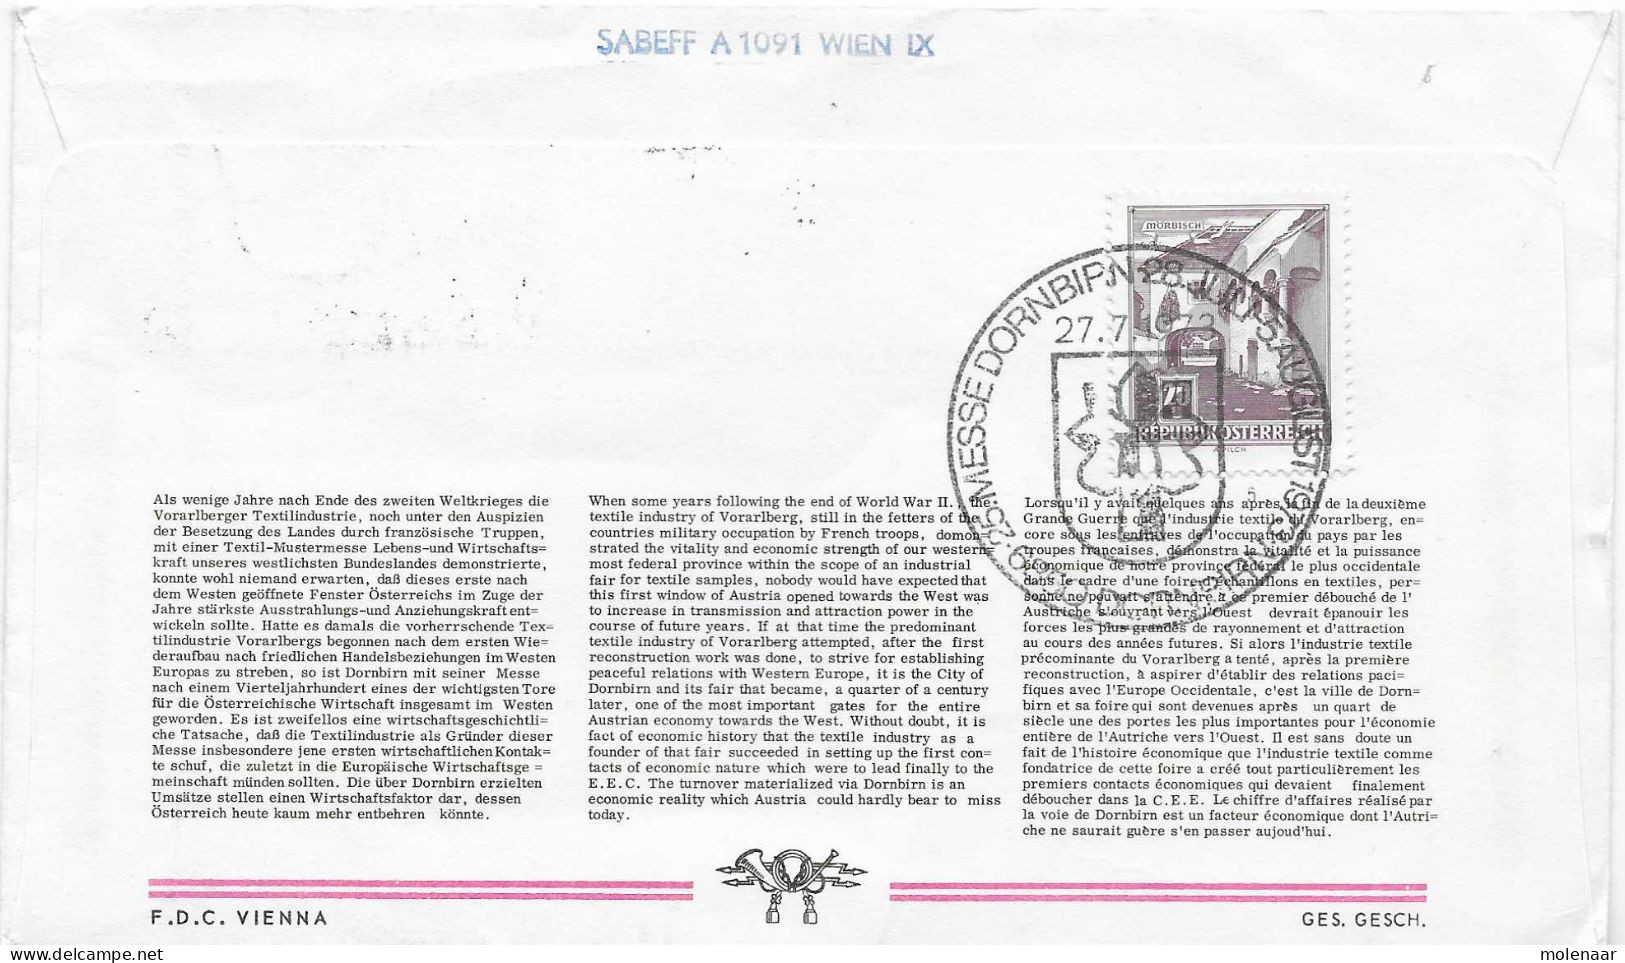 Postzegels > Europa > Oostenrijk > 1945-.... 2de Republiek > 1971-1980 > Brief Met No. 1462 (17731) - Covers & Documents